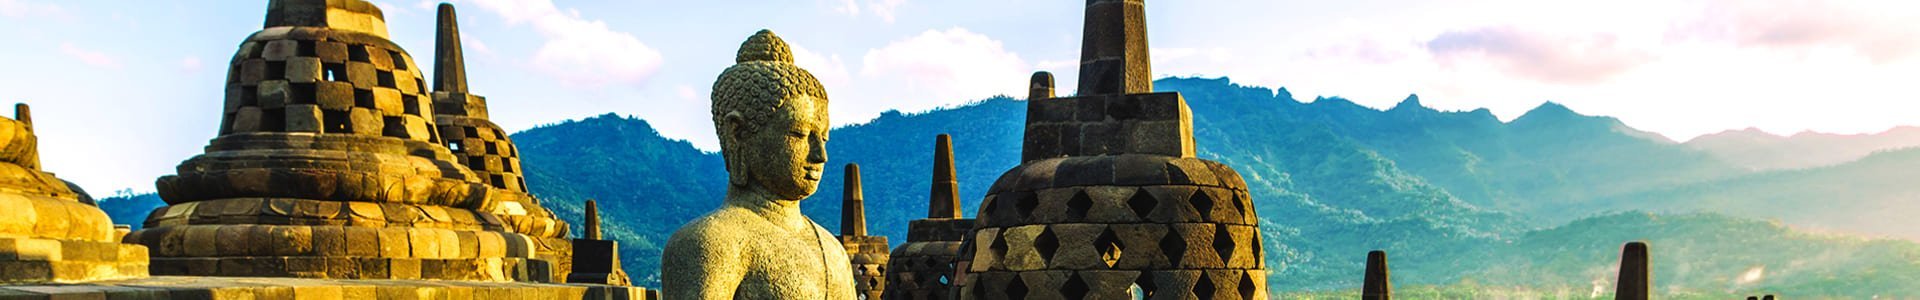 Borobudur op Java, Indonesië